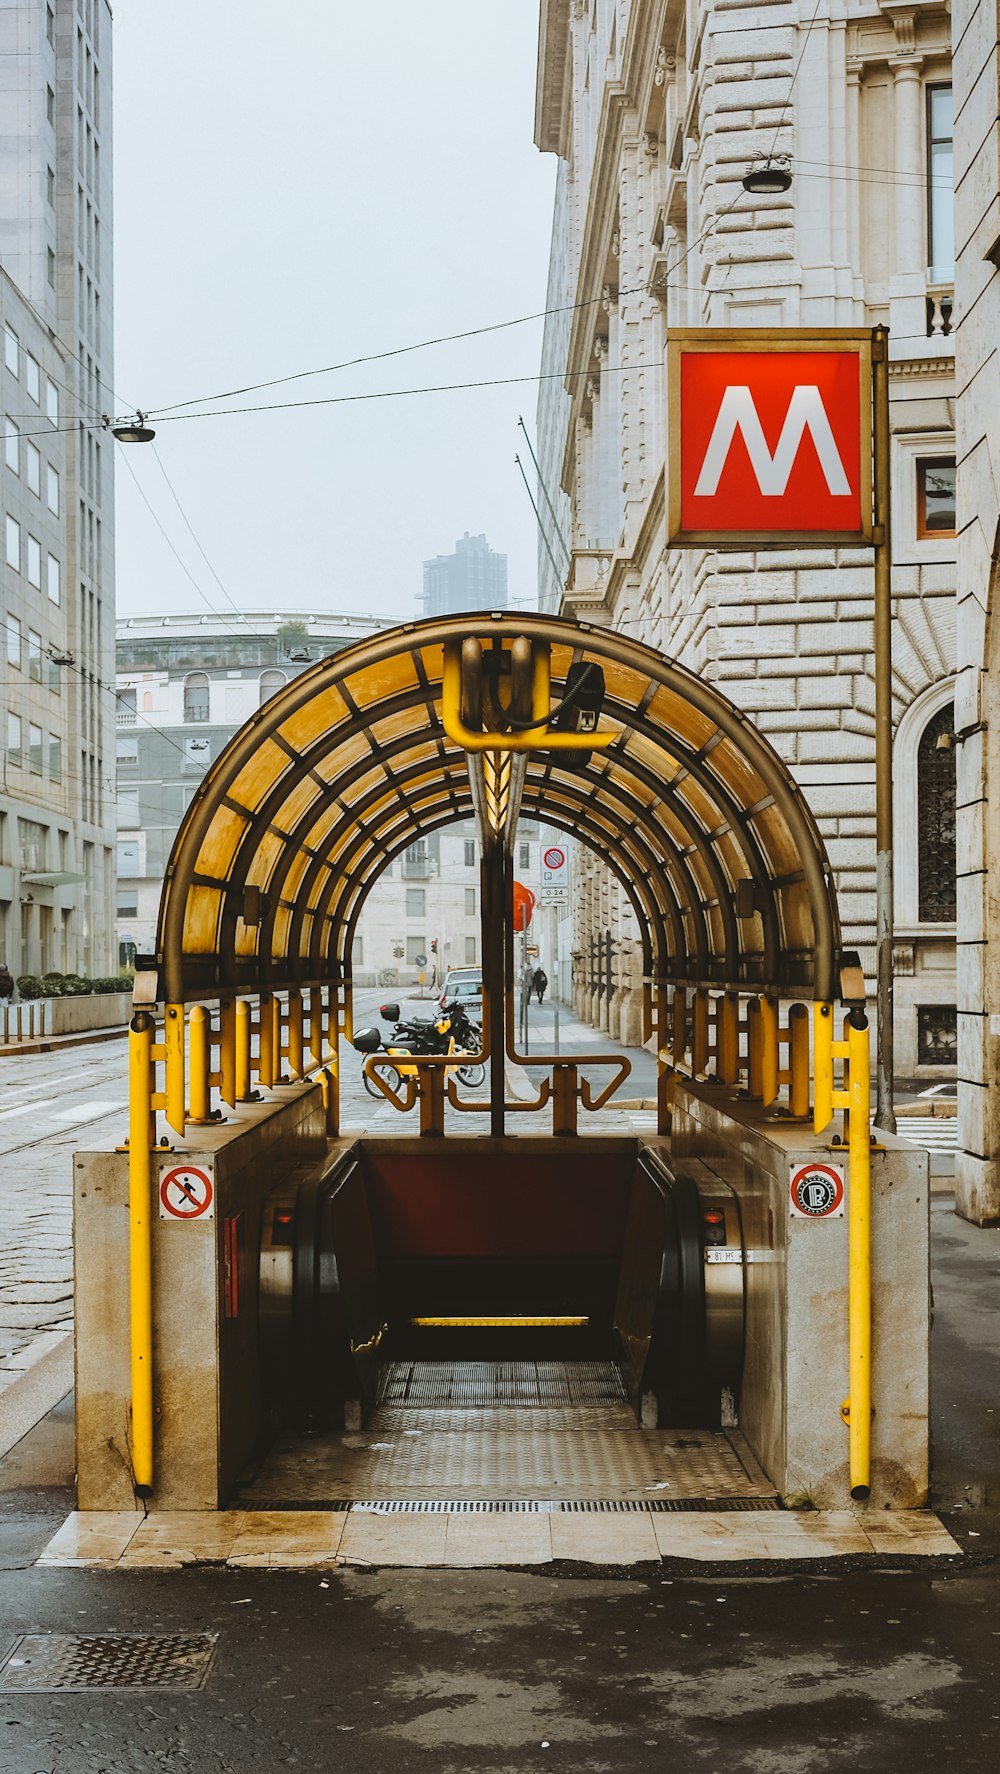 Entrée de la station de métro dans la ville pendant la journée